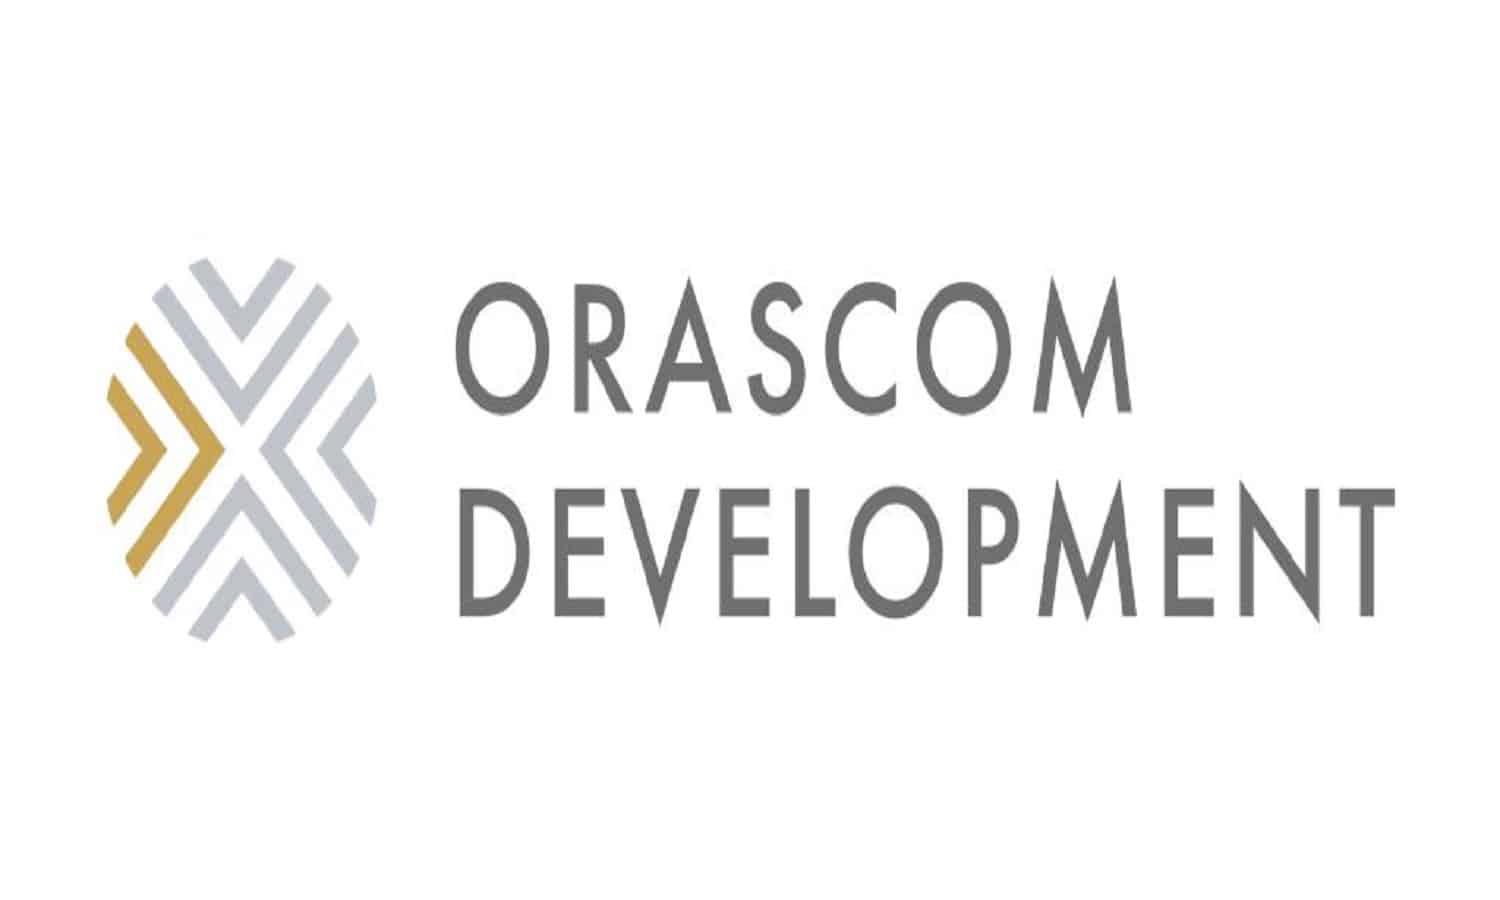 تنفيذ صفقة على أسهم أوراسكوم للتنمية بقيمة 155 مليون جنيه
